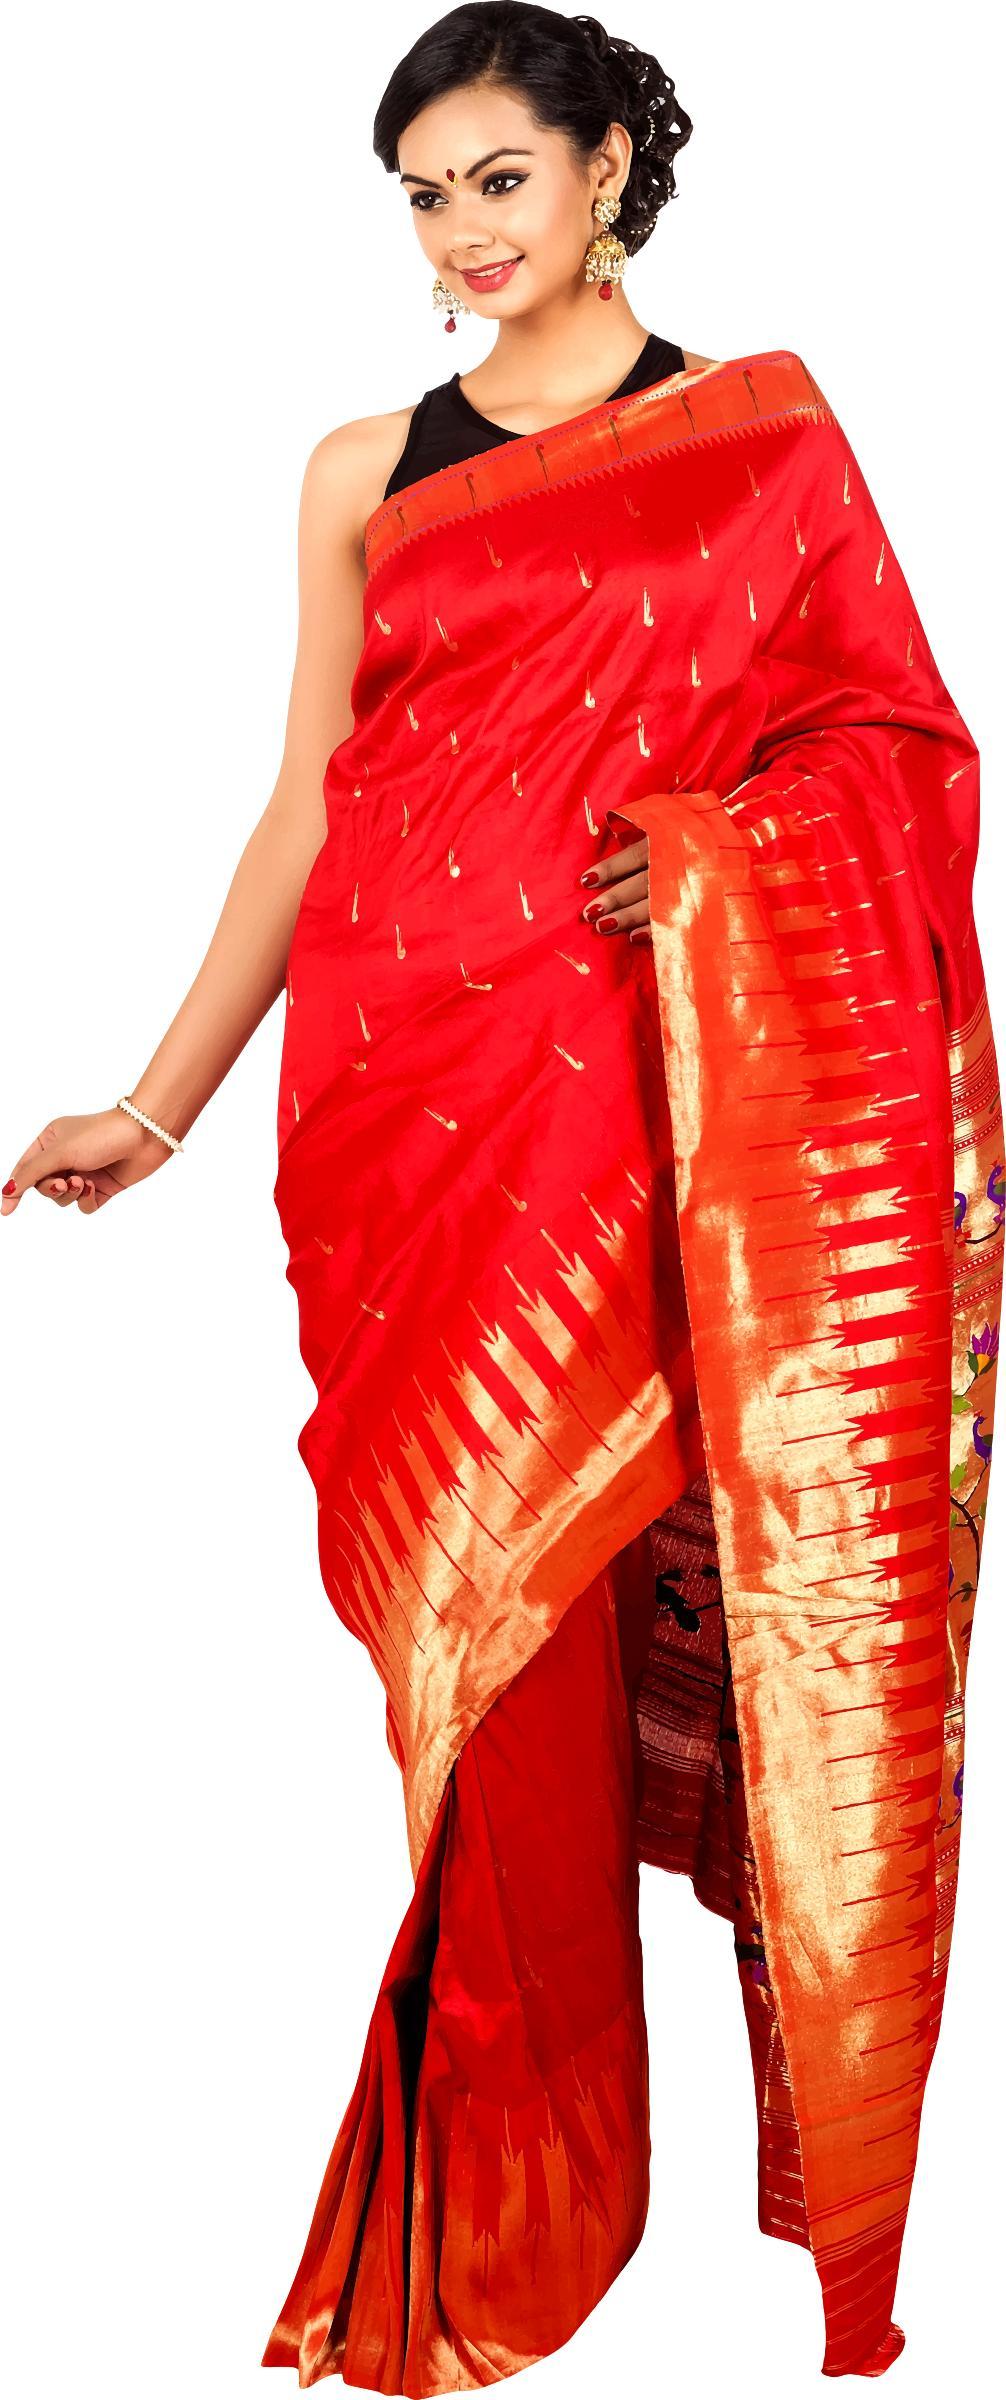 Woman in saree 6 png transparent